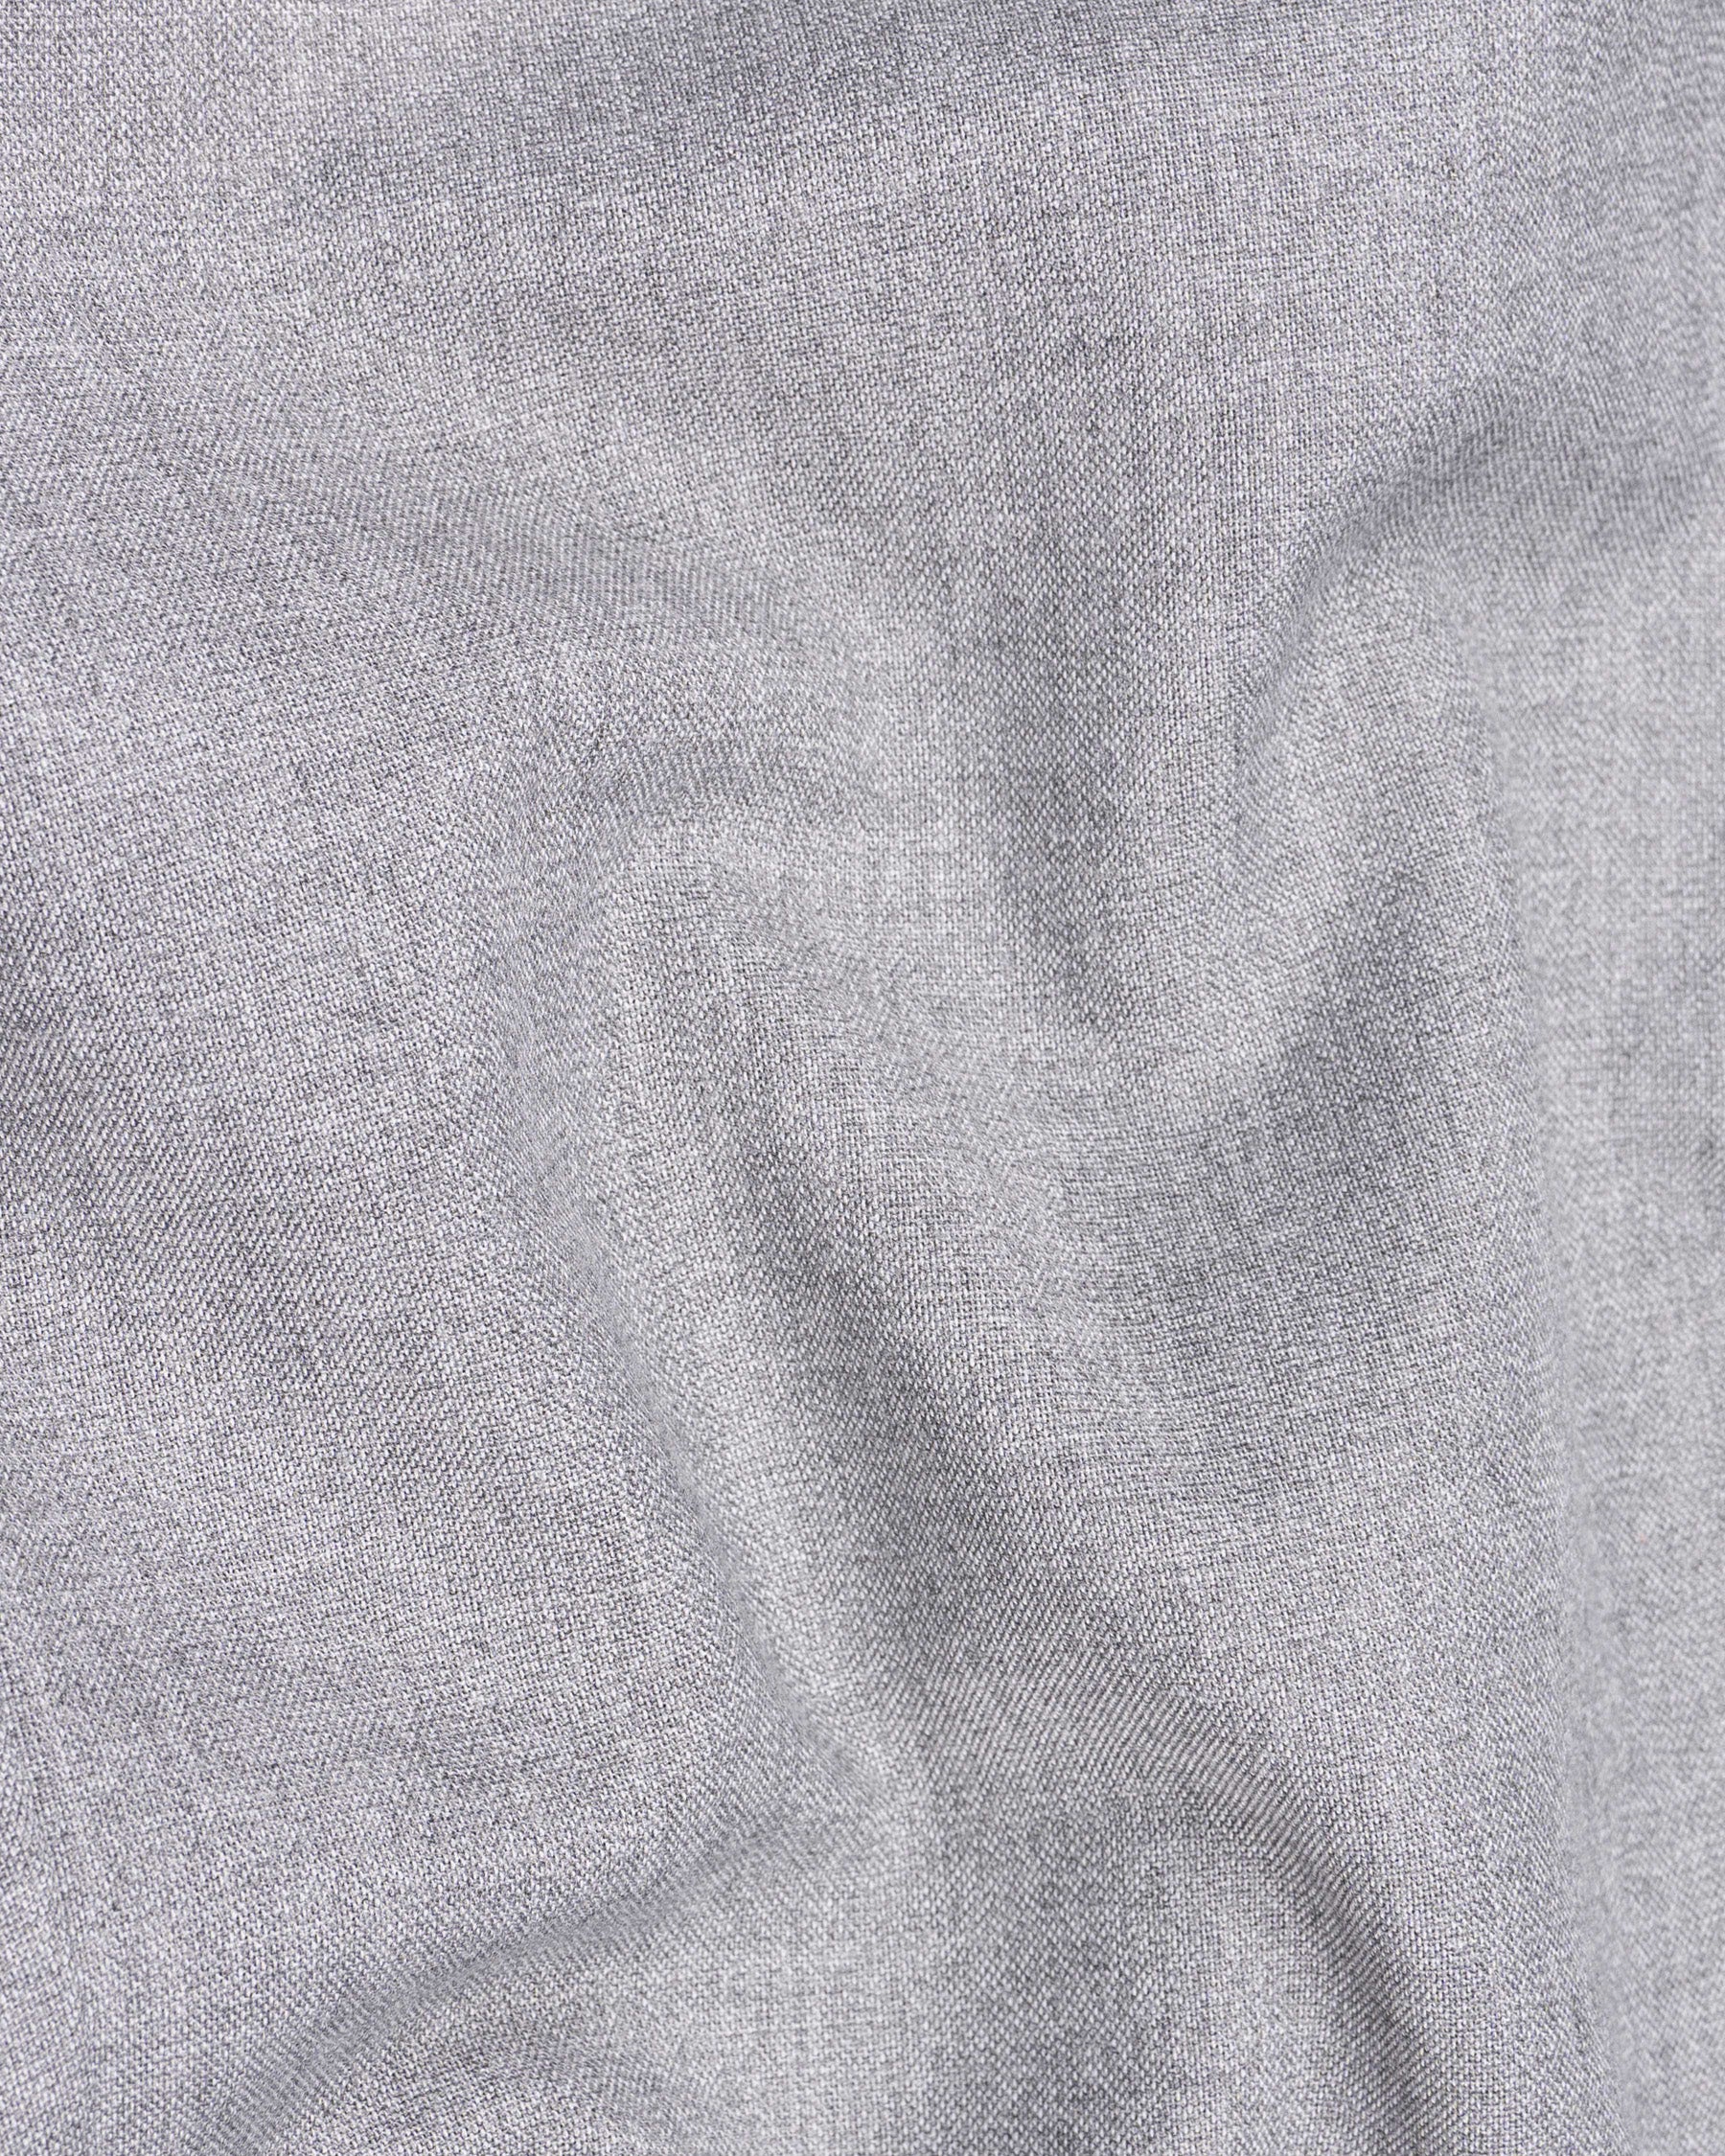 Silver Sand Grey Wool Rich Pant T1529-28, T1529-30, T1529-32, T1529-34, T1529-36, T1529-38, T1529-40, T1529-42, T1529-44